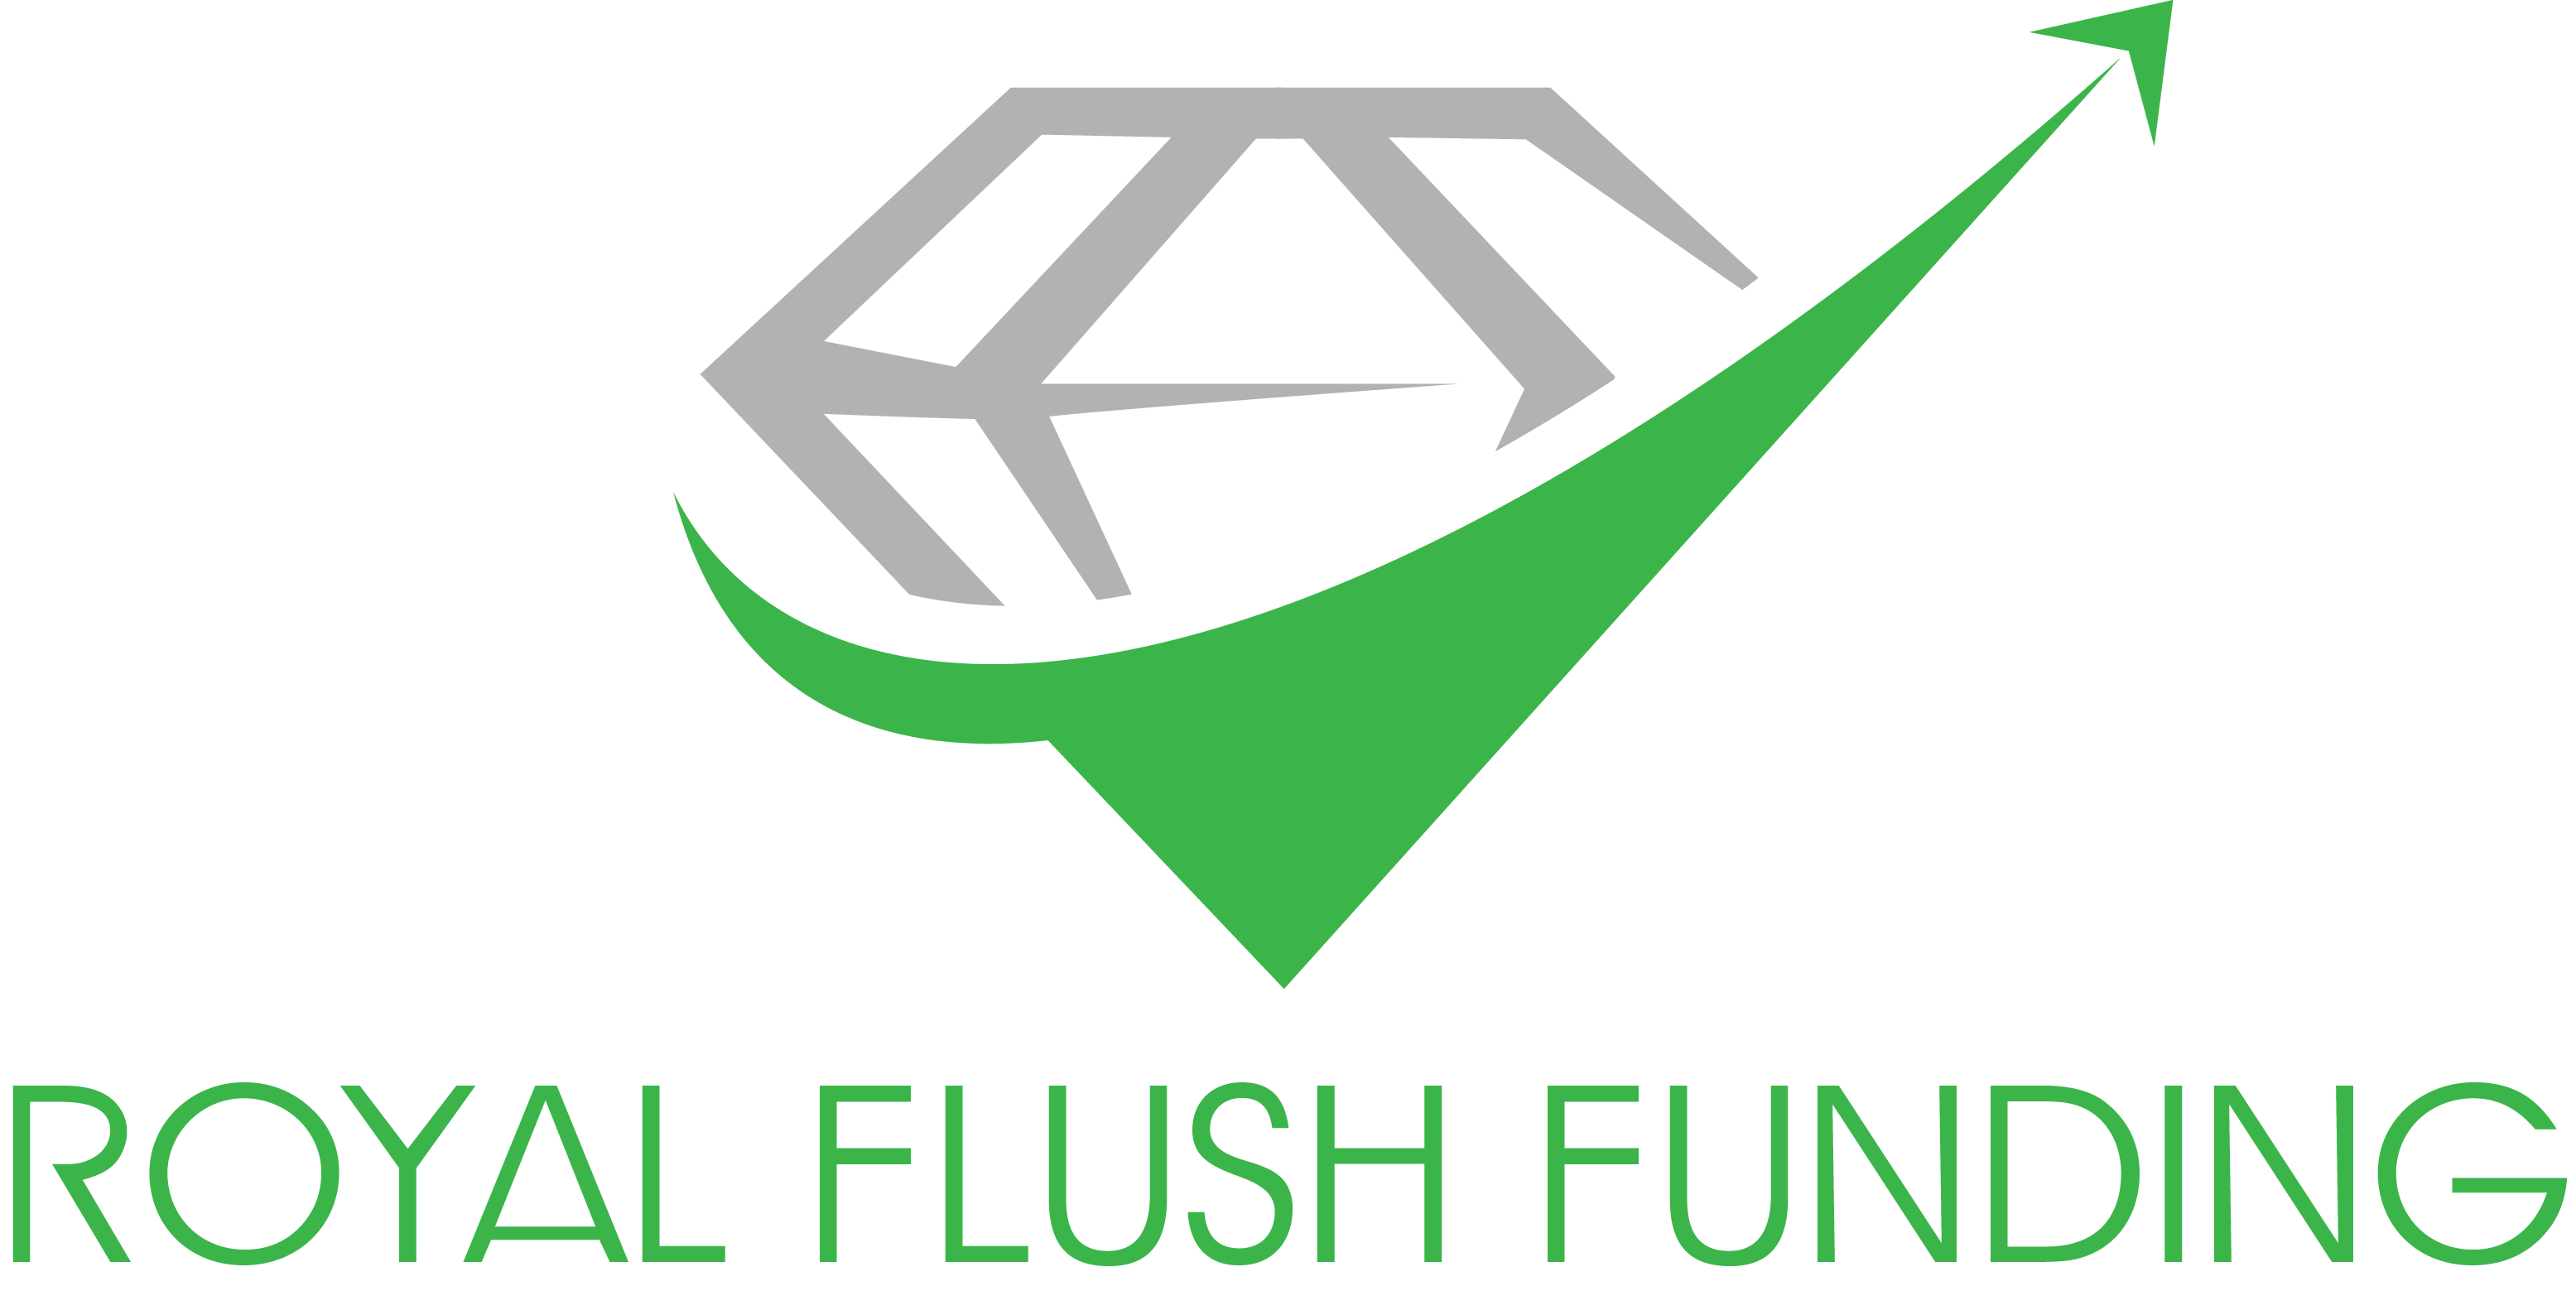 Royal Flush Funding, LLC